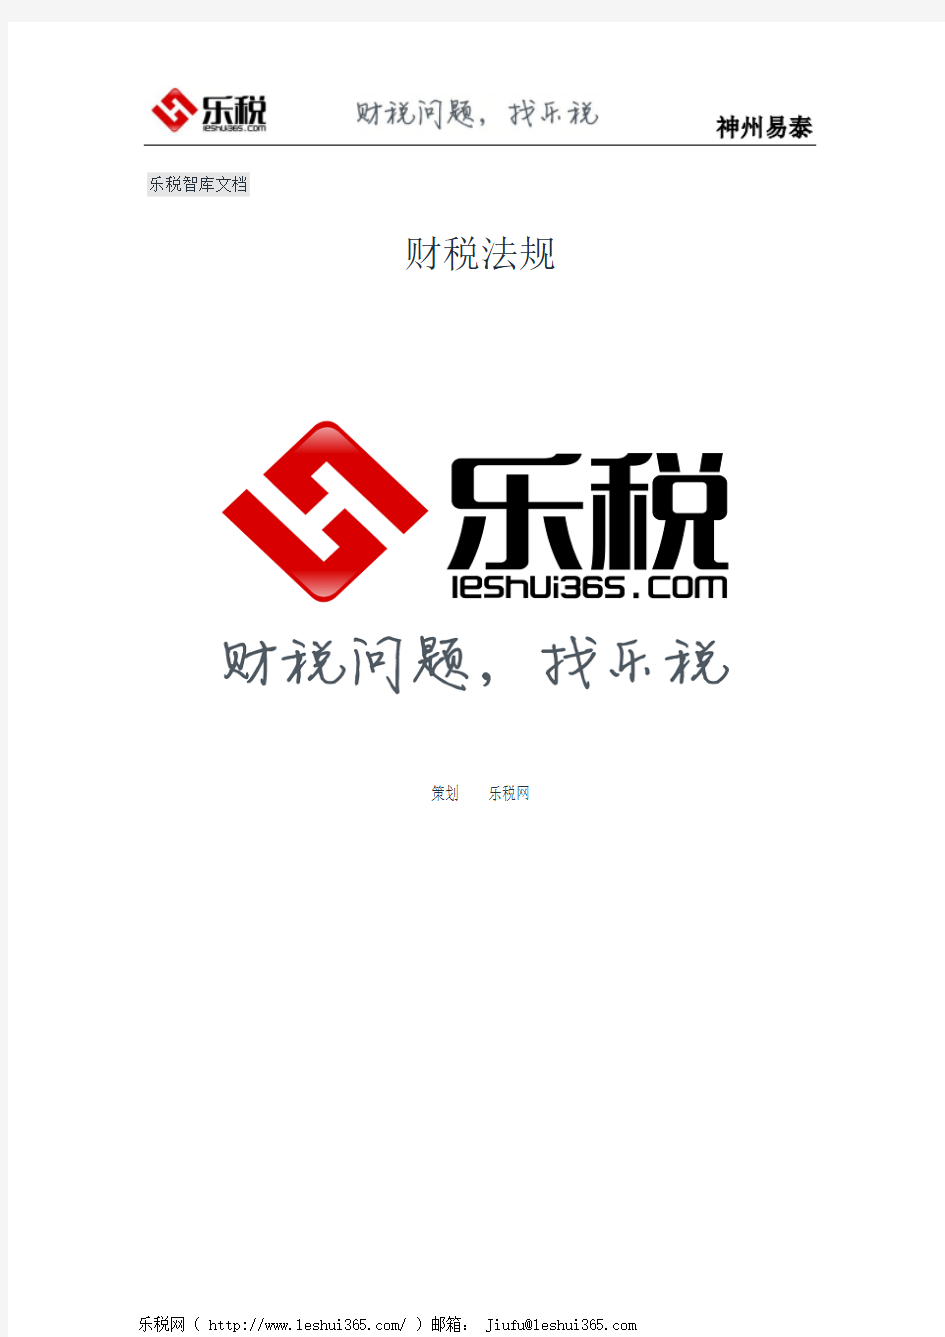 广东省地方税务局关于公布已失效或废止的税收规范性文件目录的公告